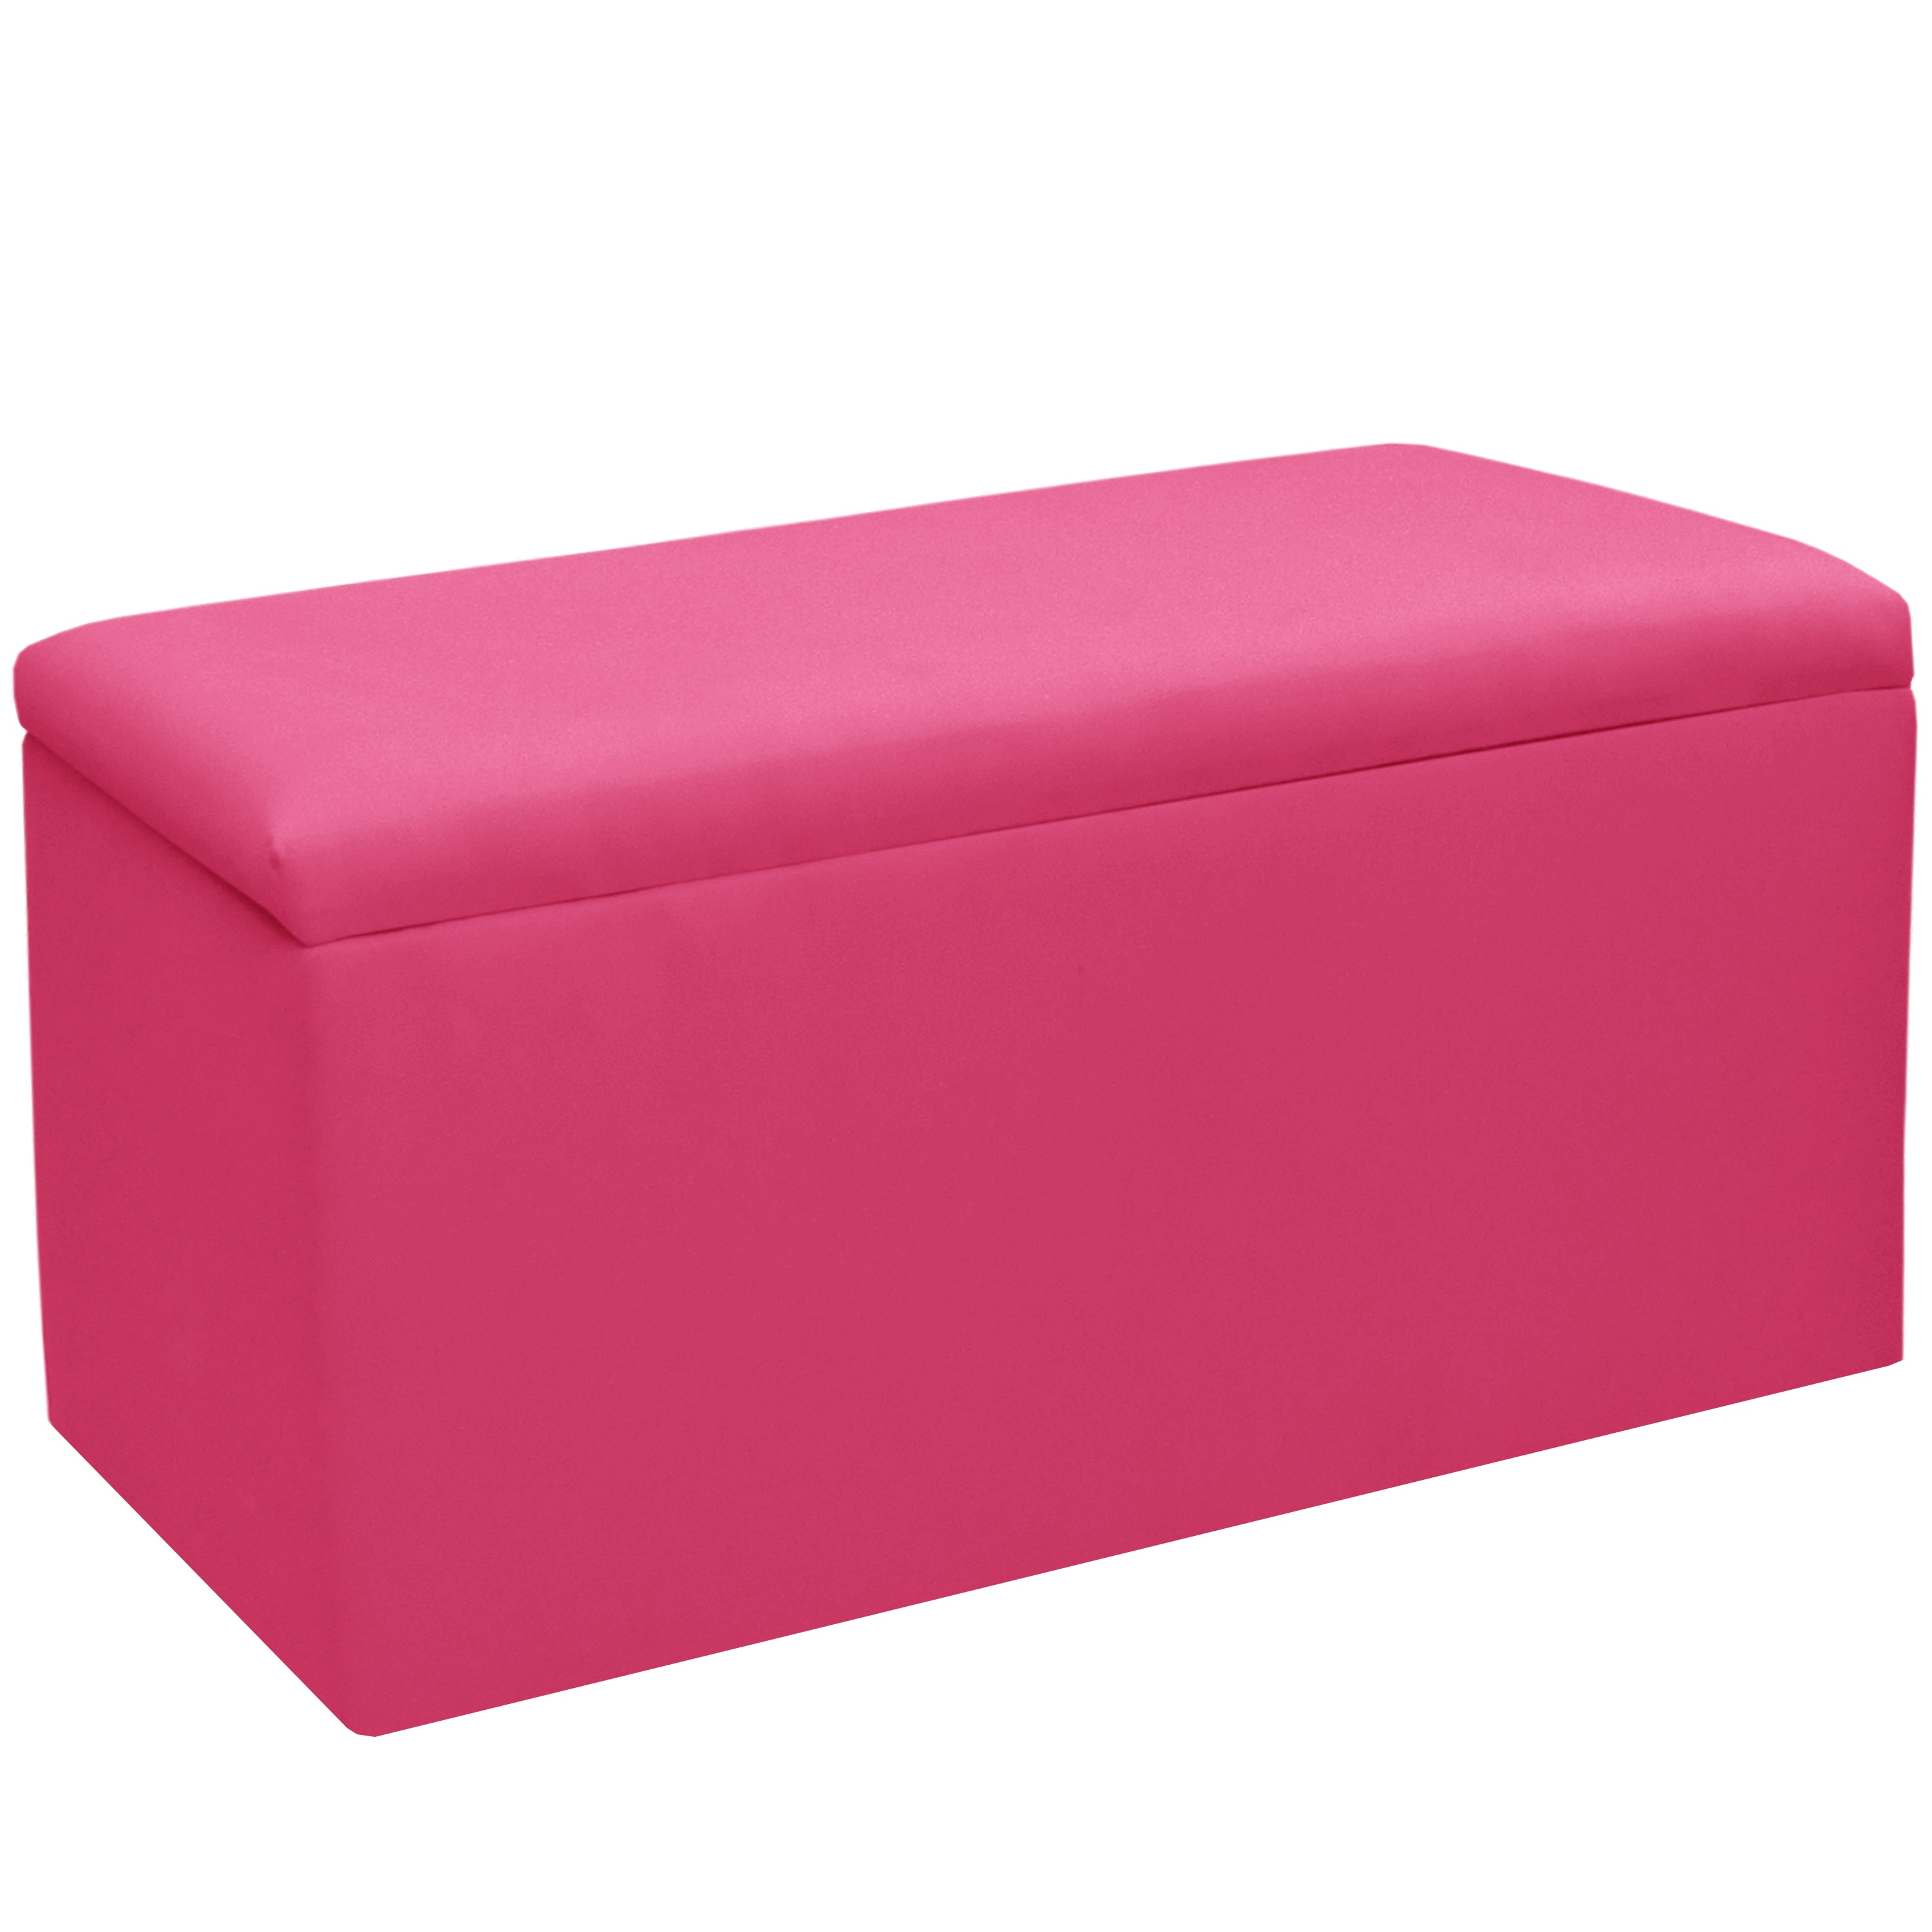 Skyline Furniture Kids Storage Bench In Duck French Pink EBay